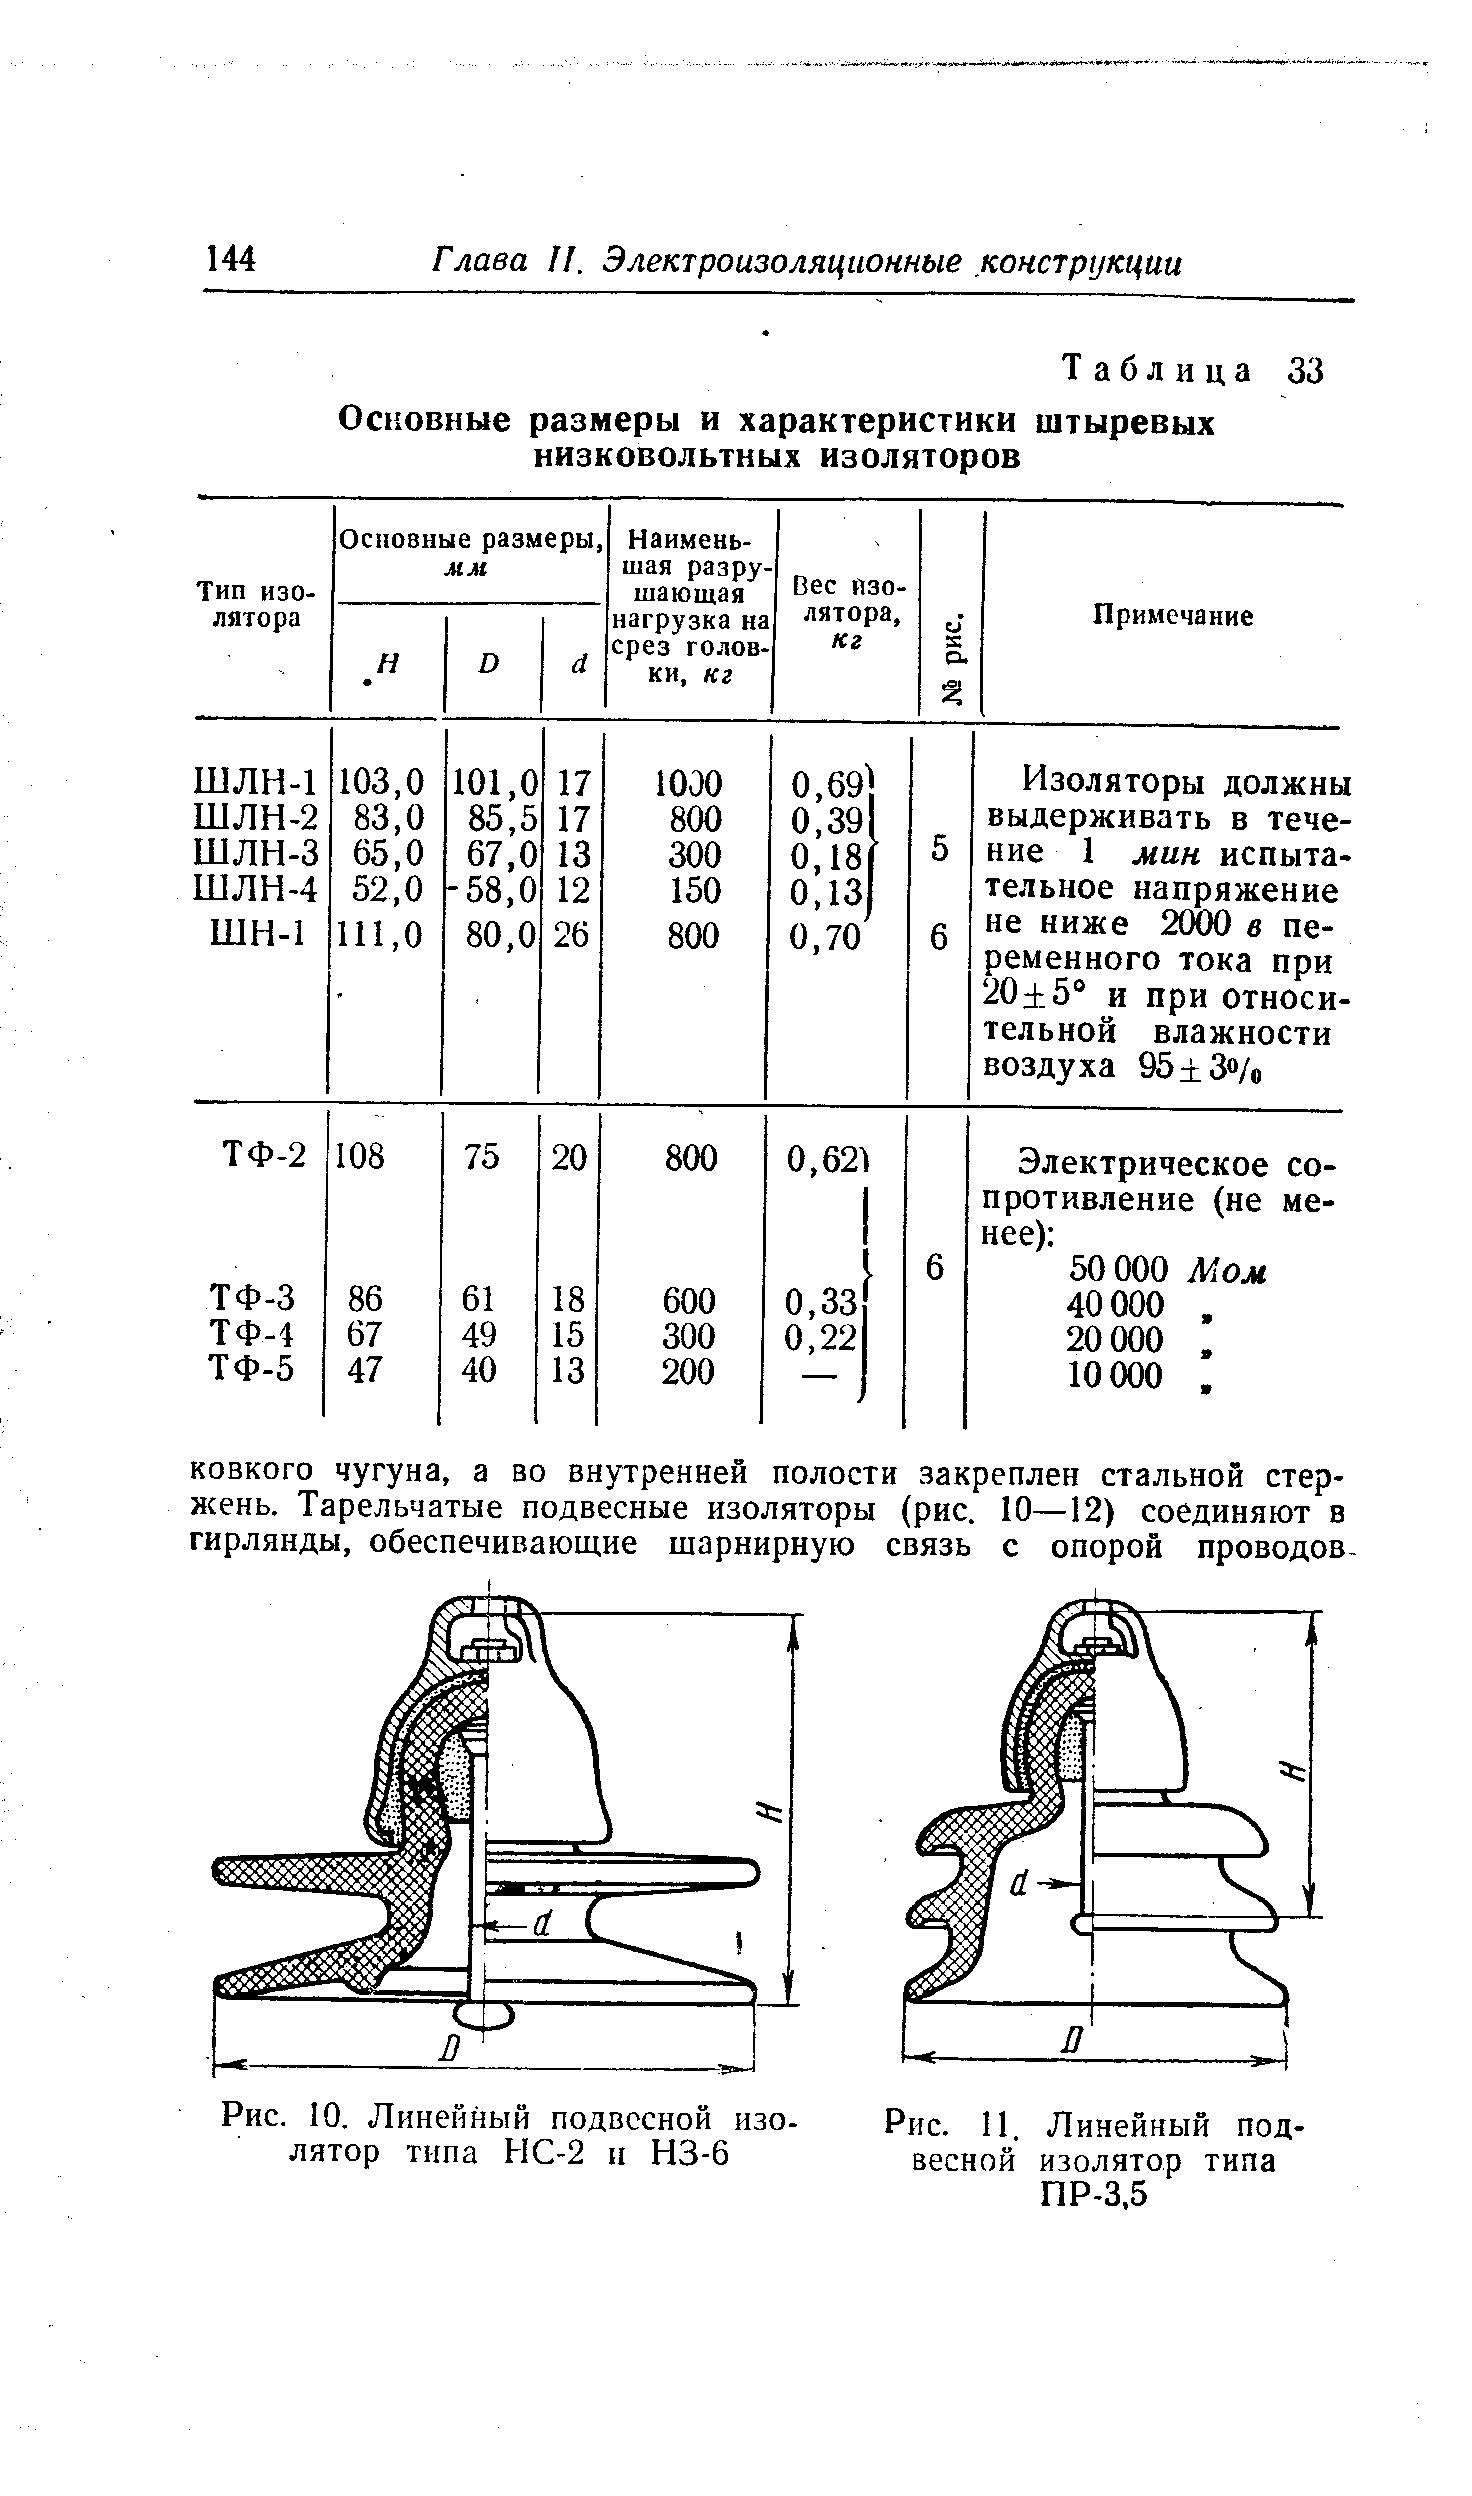 Рис. 11. Линейный подвесной изолятор типа ПР-3,5
